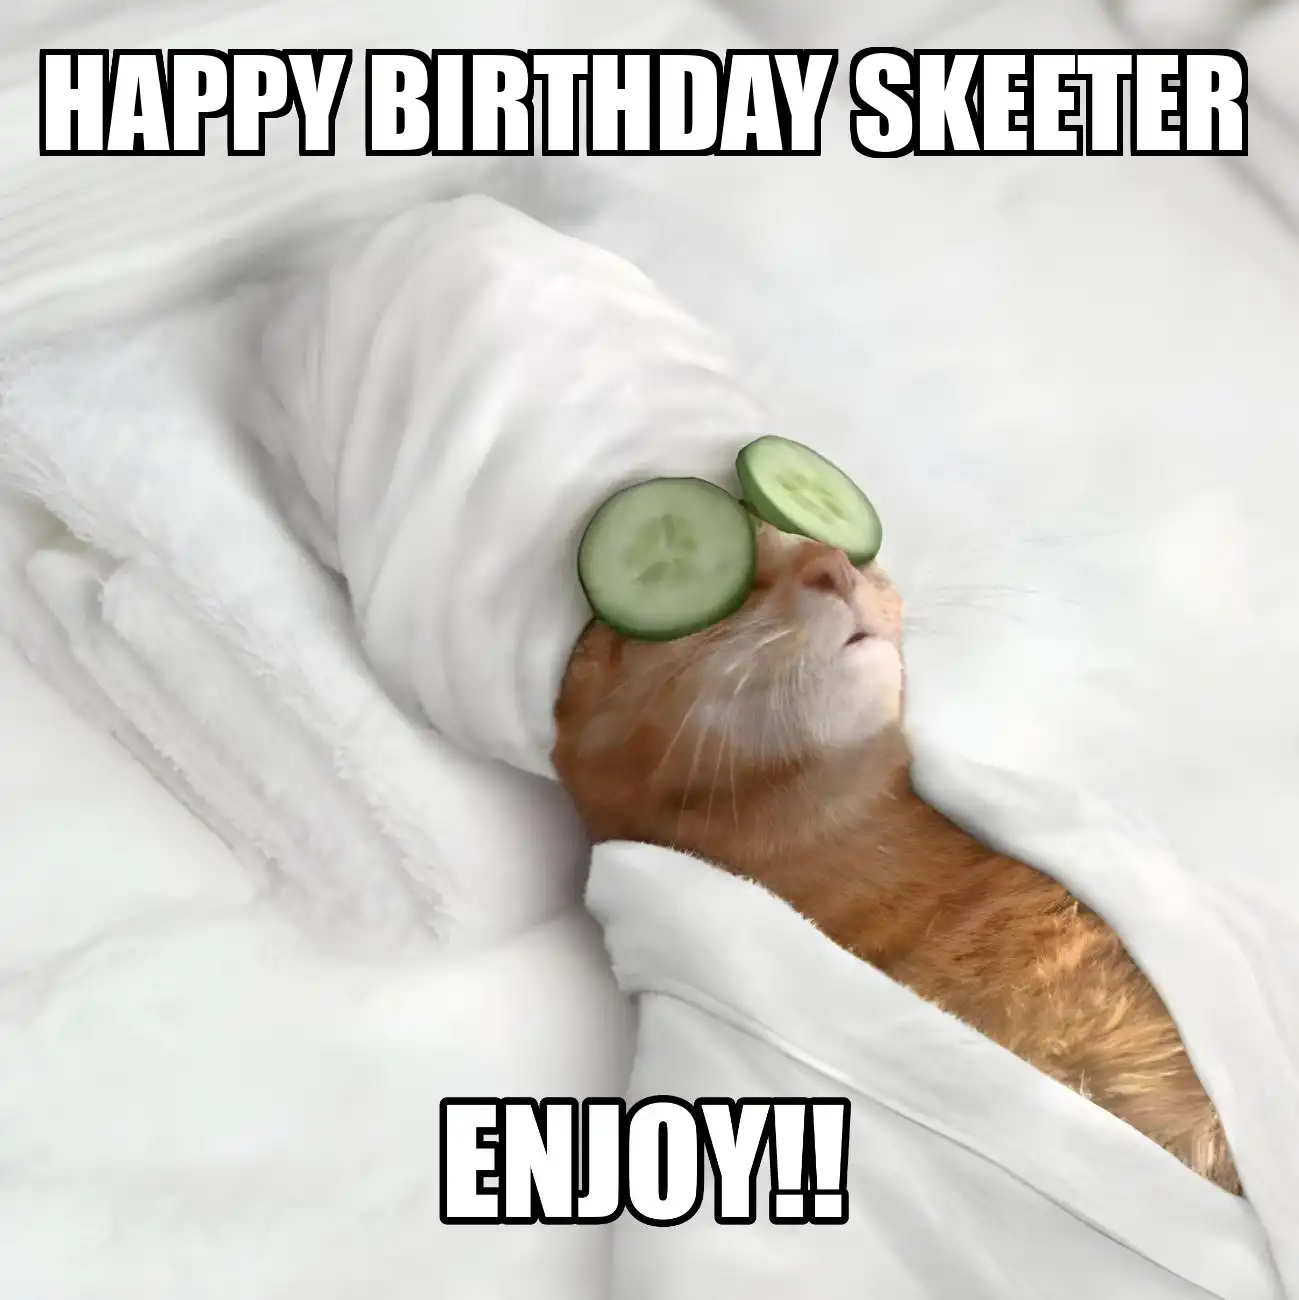 Happy Birthday Skeeter Enjoy Cat Meme